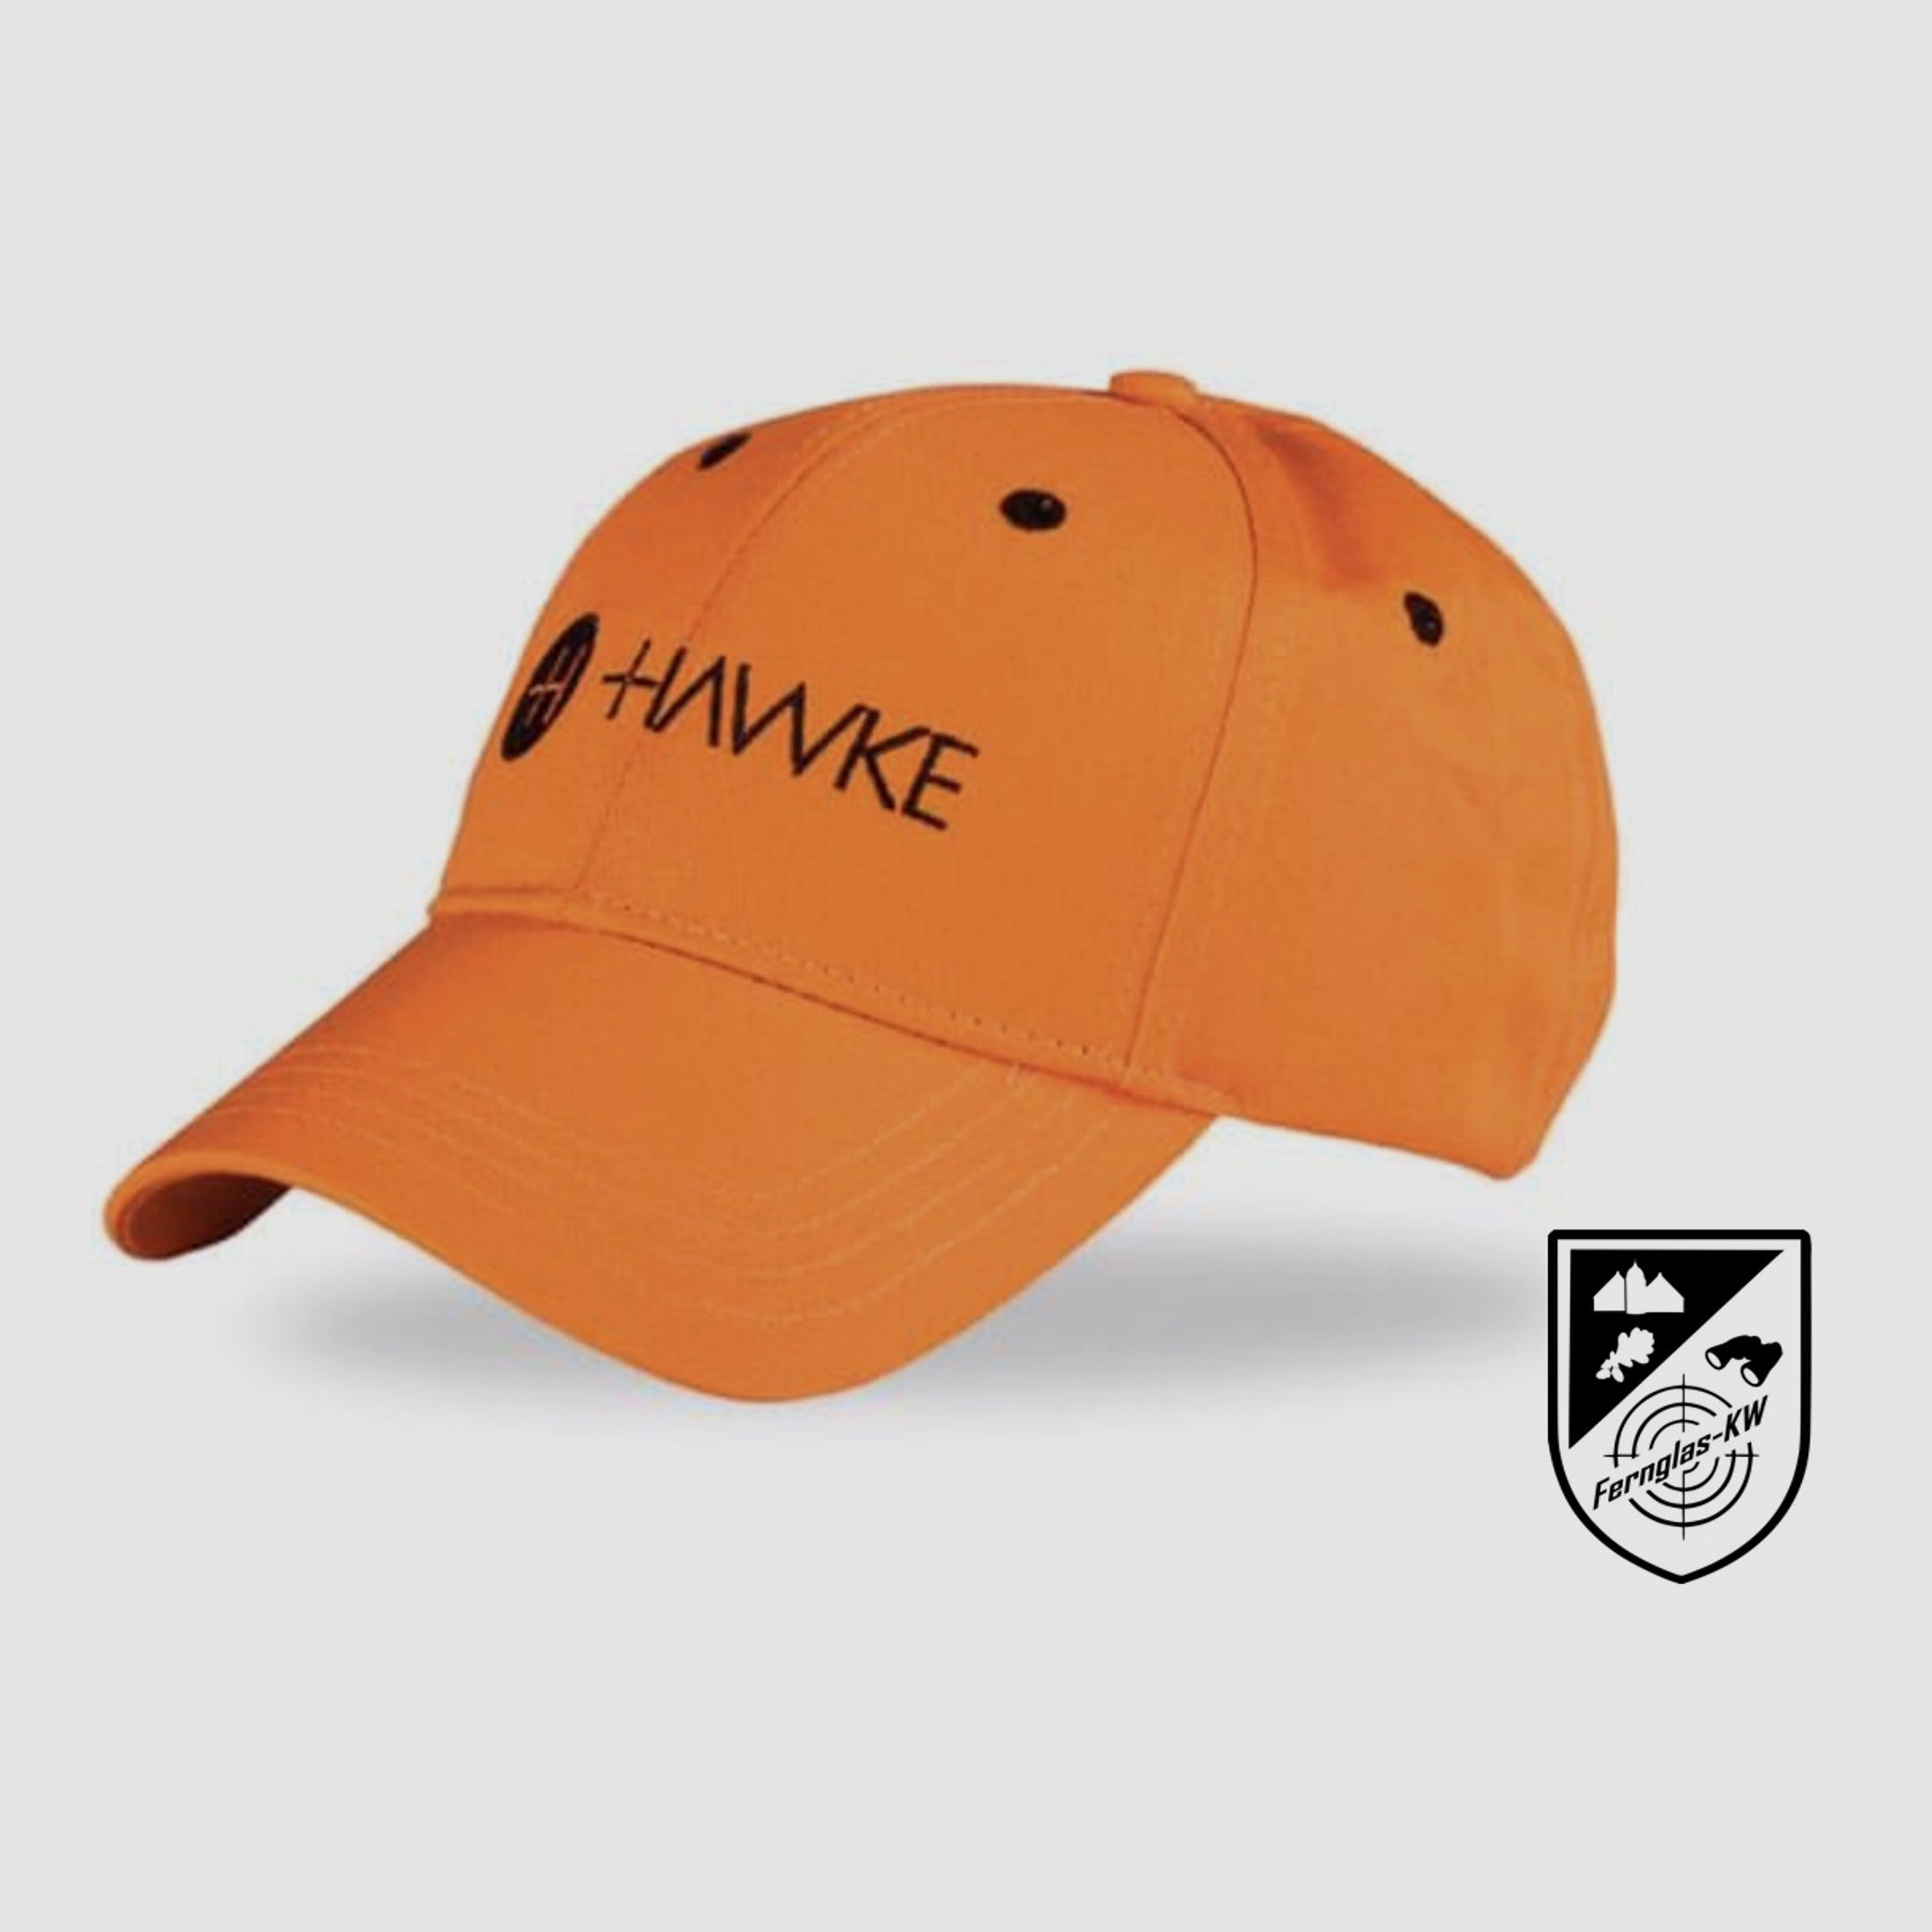 Hawke Cap Baumwollkappe Orange 99321 Einheitsgröße